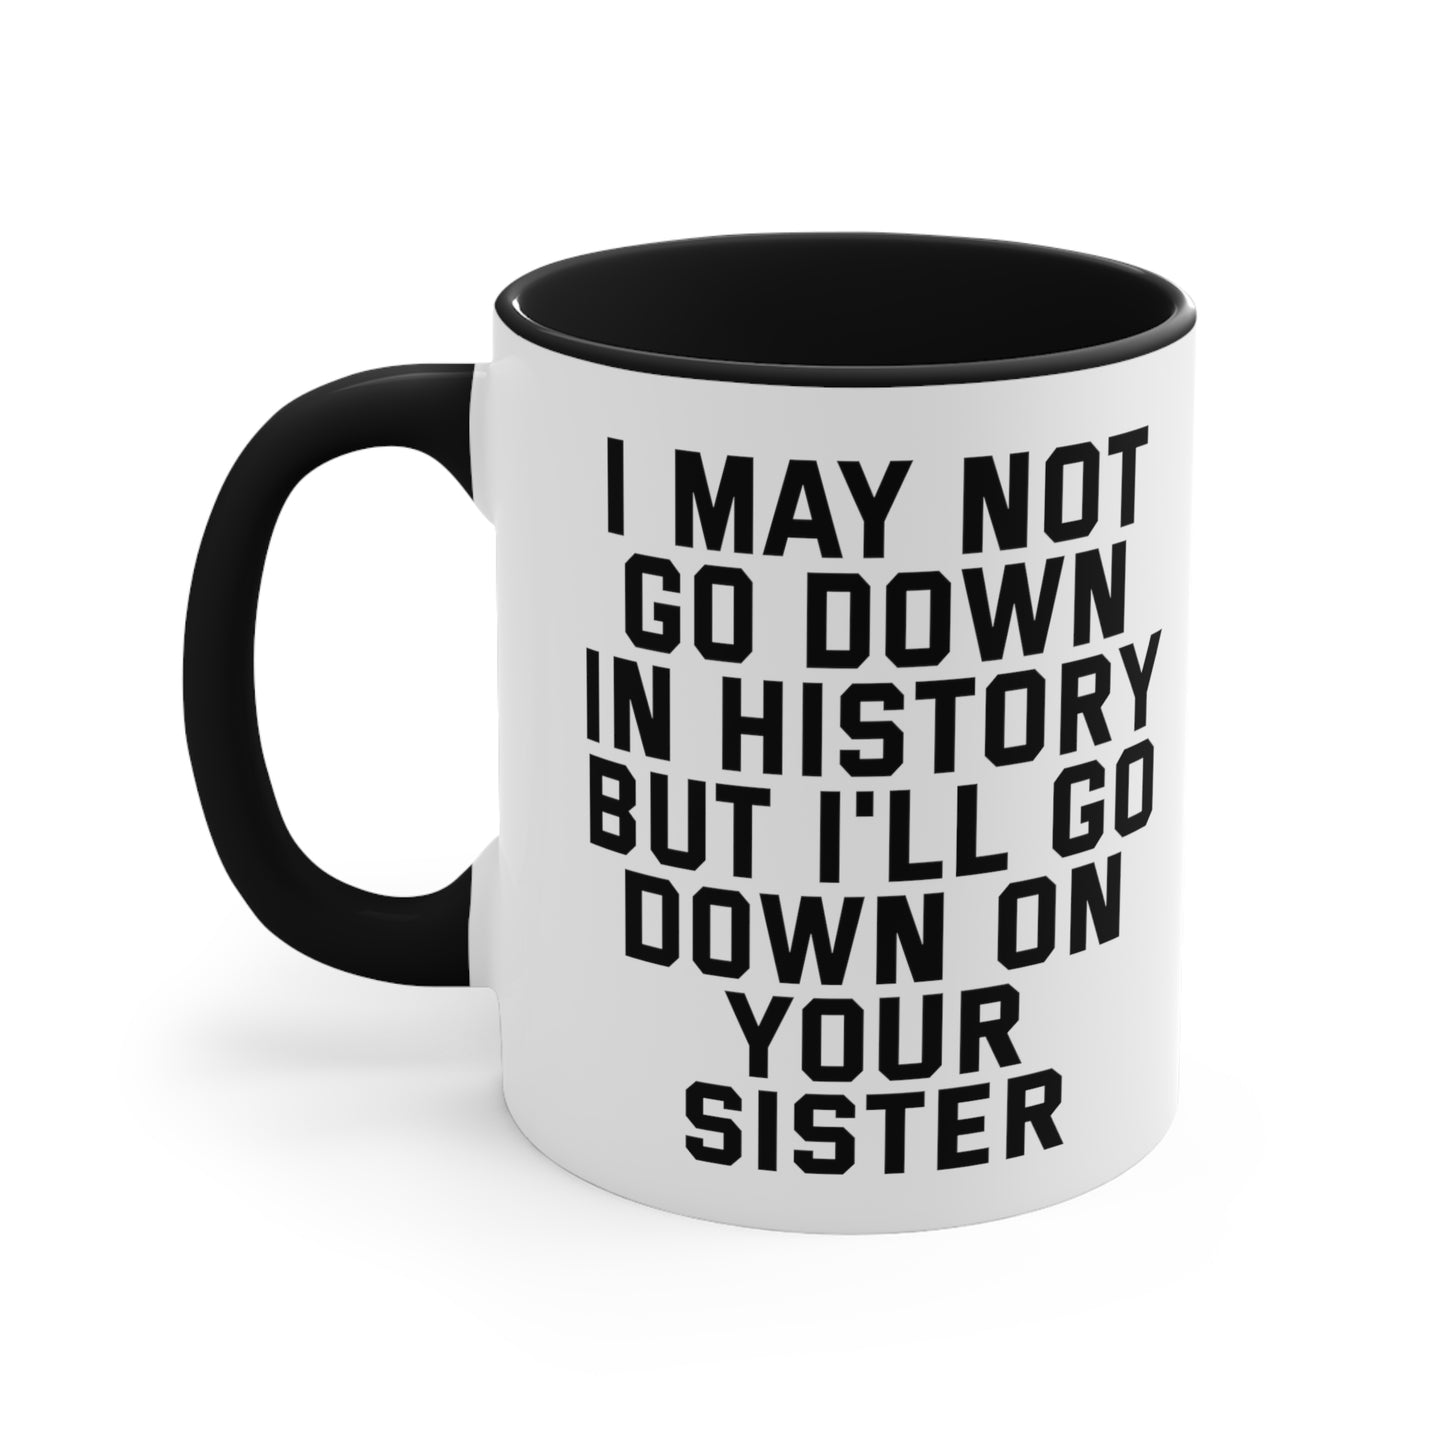 Down on Your Sister Mug, 11oz